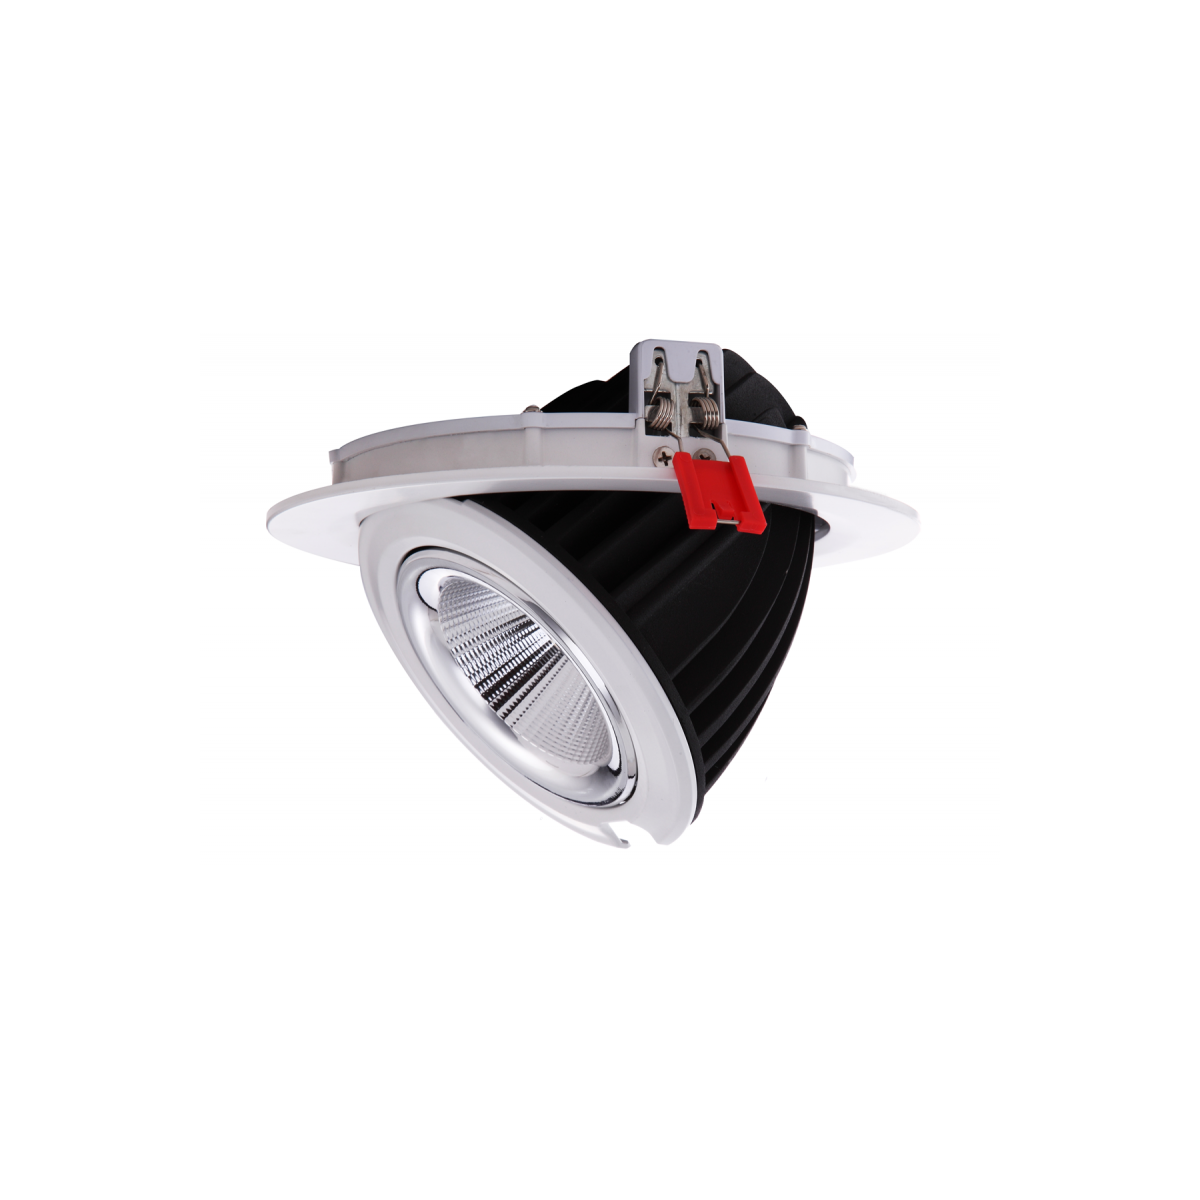 42W COB LED Downlight - CRI90 - Bridgelux chip - Lifud driver - IP20 - Cutout Ø 215mm